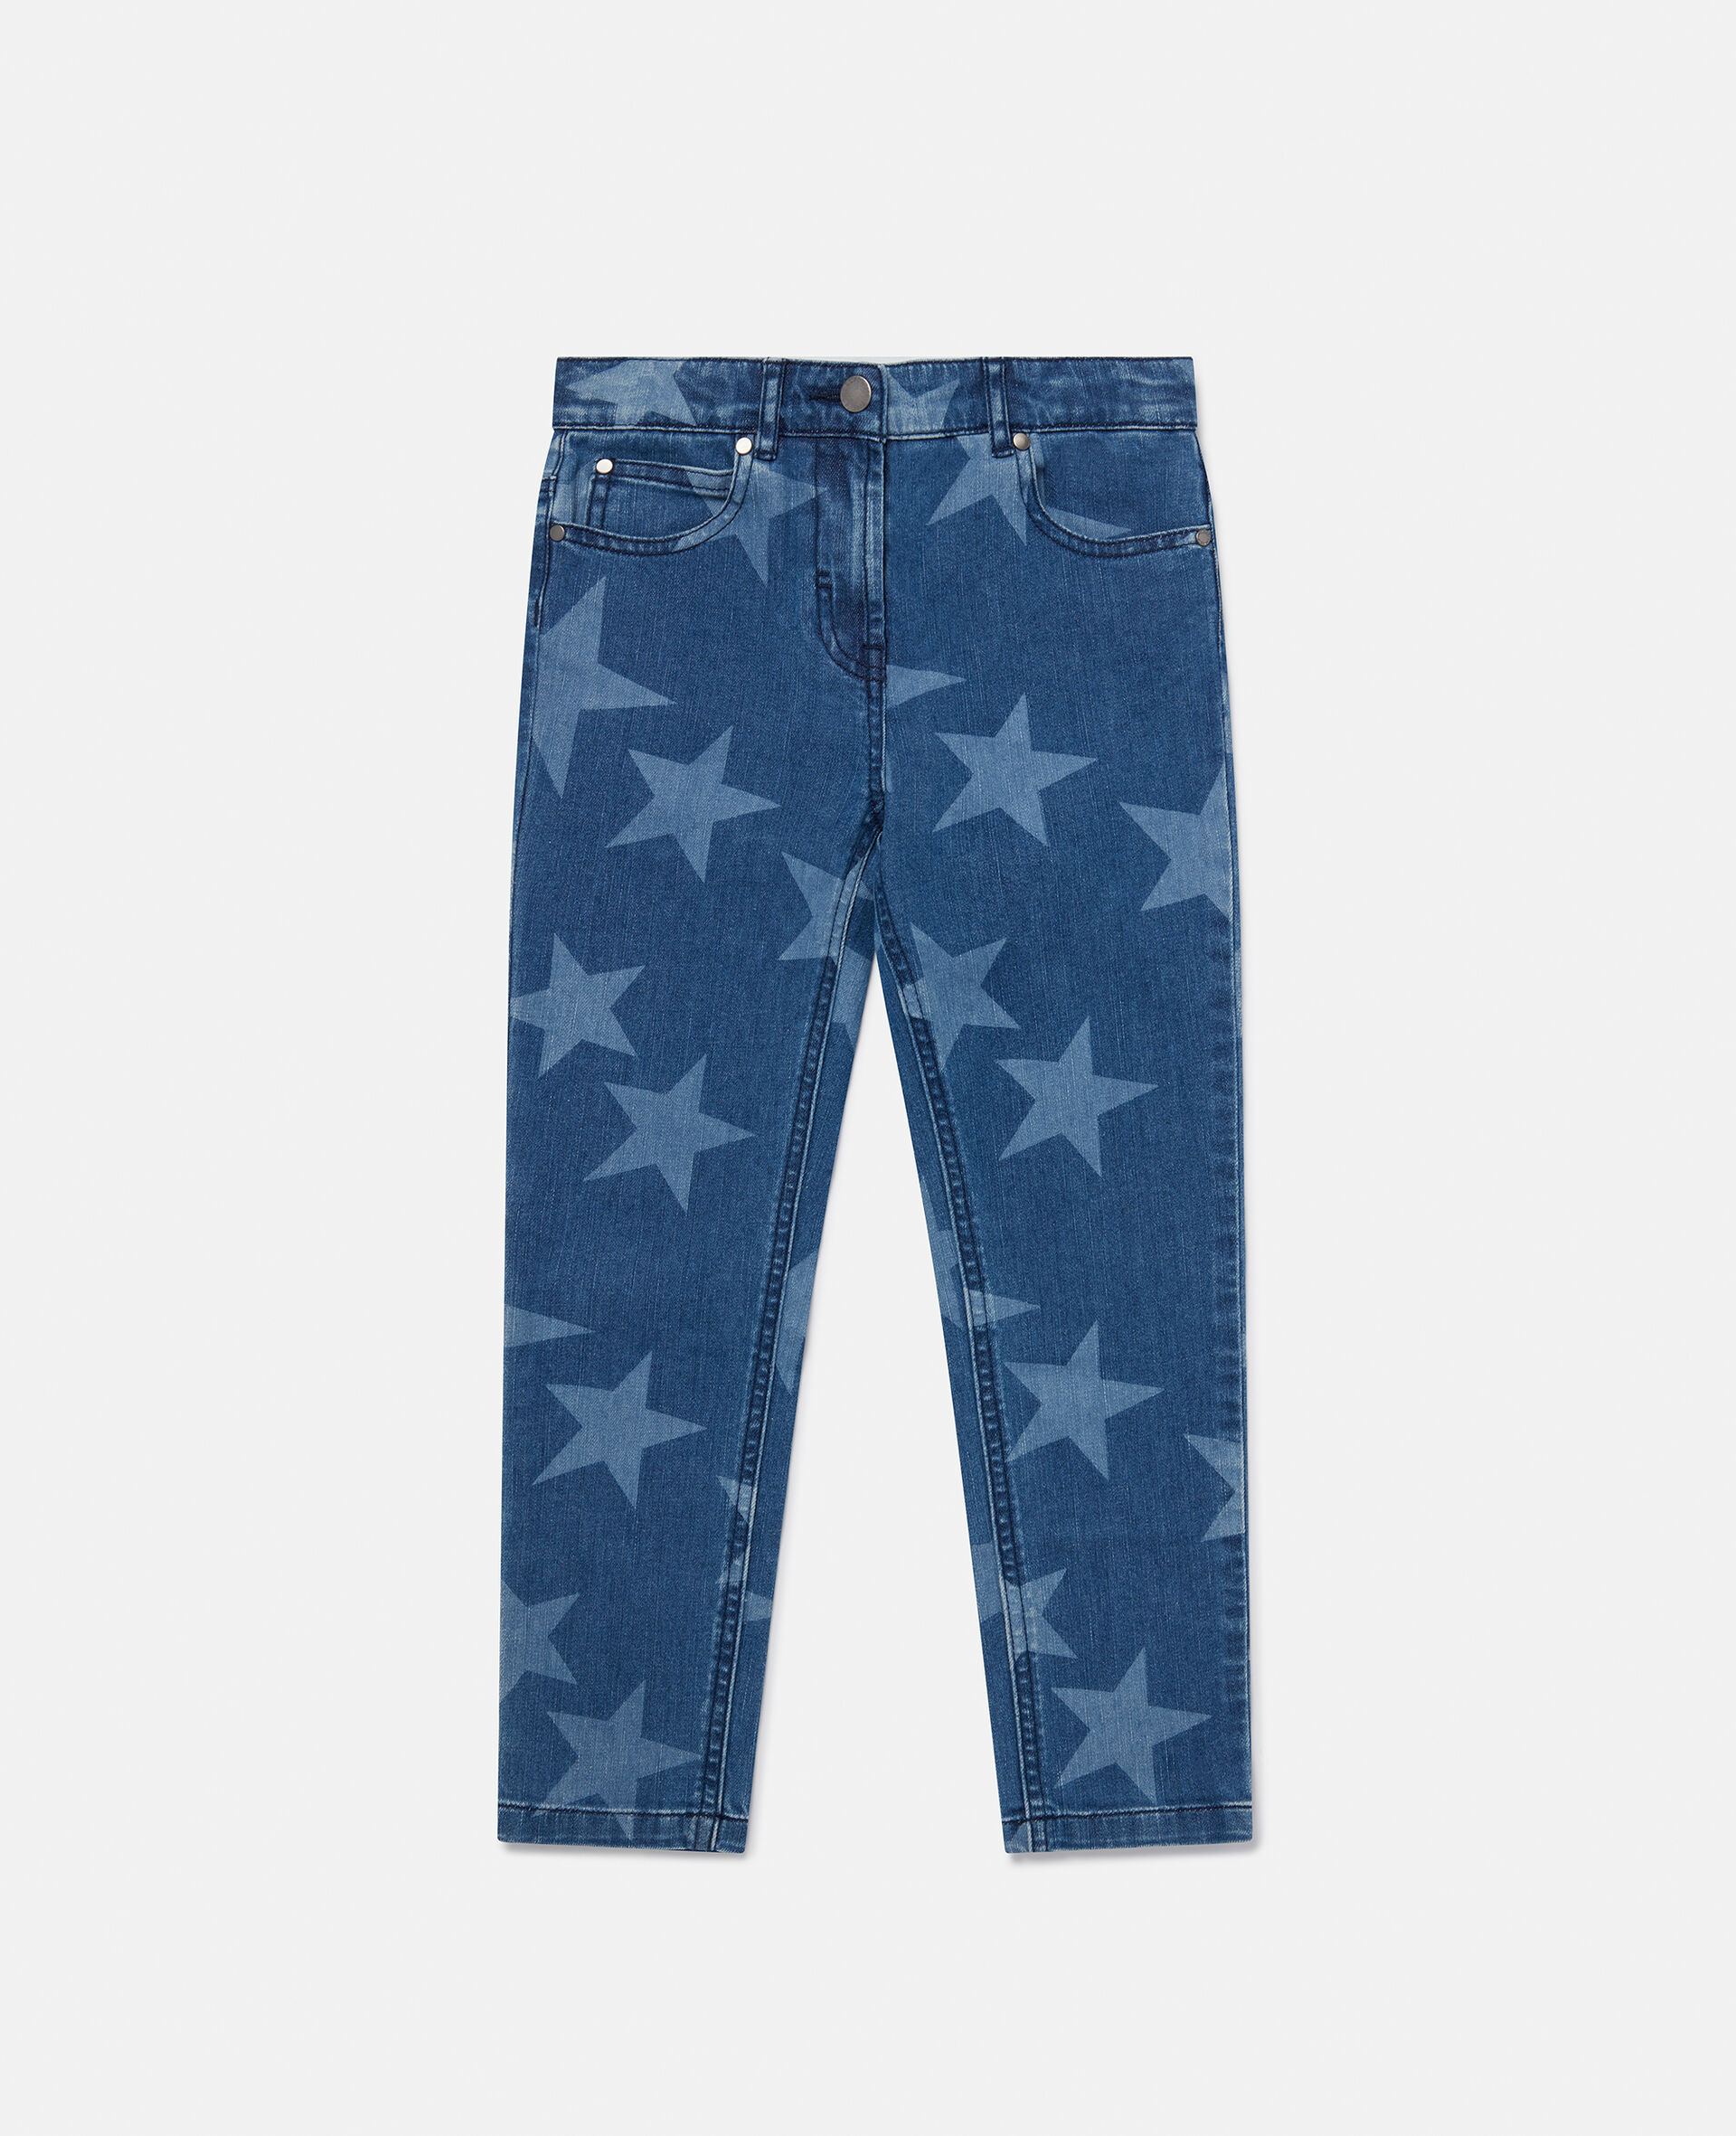 Skinny Jeans mit Stern Print-Blau-medium